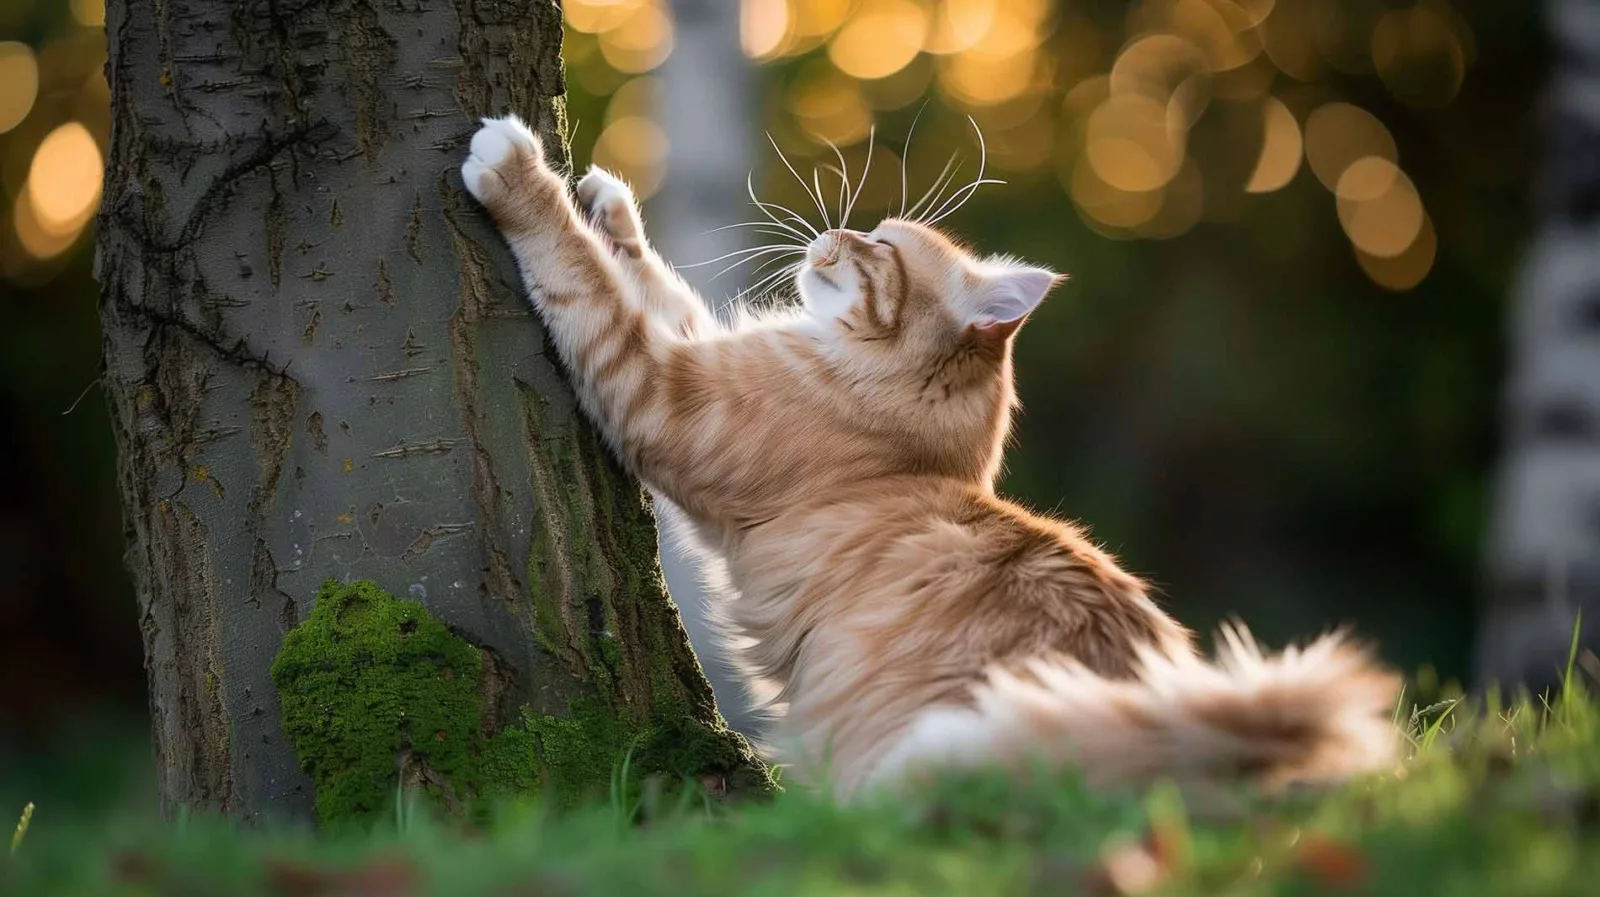 Eine größere Katze in entspannter Haltung an der Oberfläche eines Baumes. Sie steht auf ihren Hinterbeinen, die Vorderpfoten sind weit nach oben gestreckt und drücken gegen den Baum, der Kopf ist nach hinten geneigt und die Augen sind geschlossen. Das flauschige Fell und die weichen Linien der Katze kontrastieren mit dem robusten, unbeweglichen Baum.